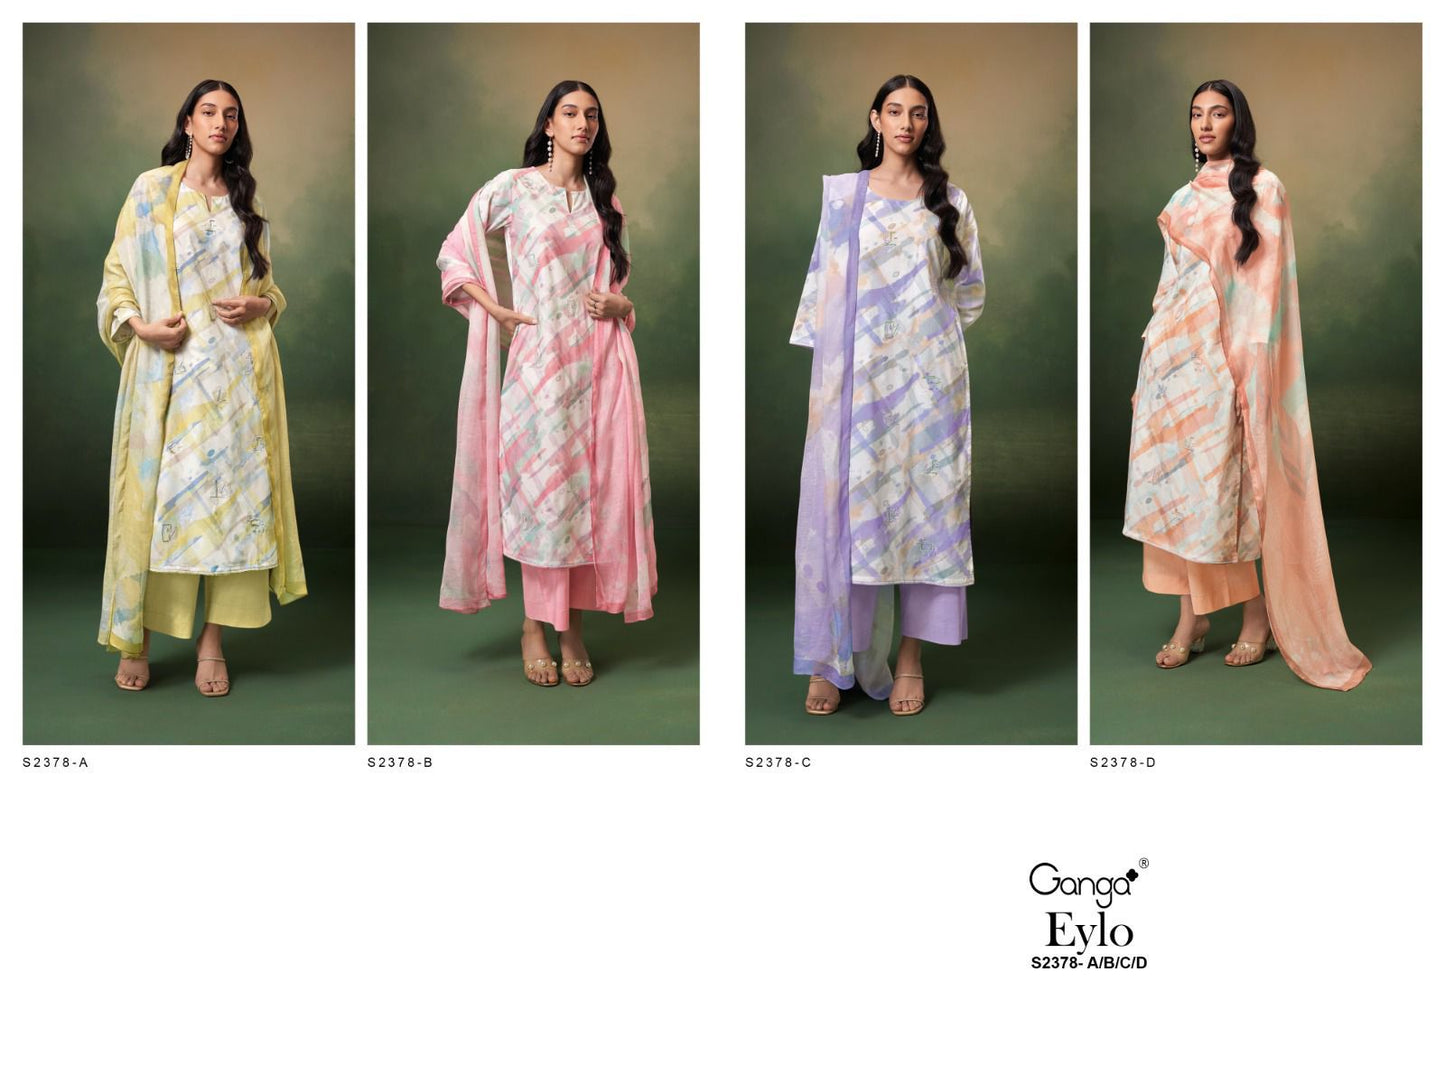 Eylo 2378 Ganga Cotton Plazzo Style Suits